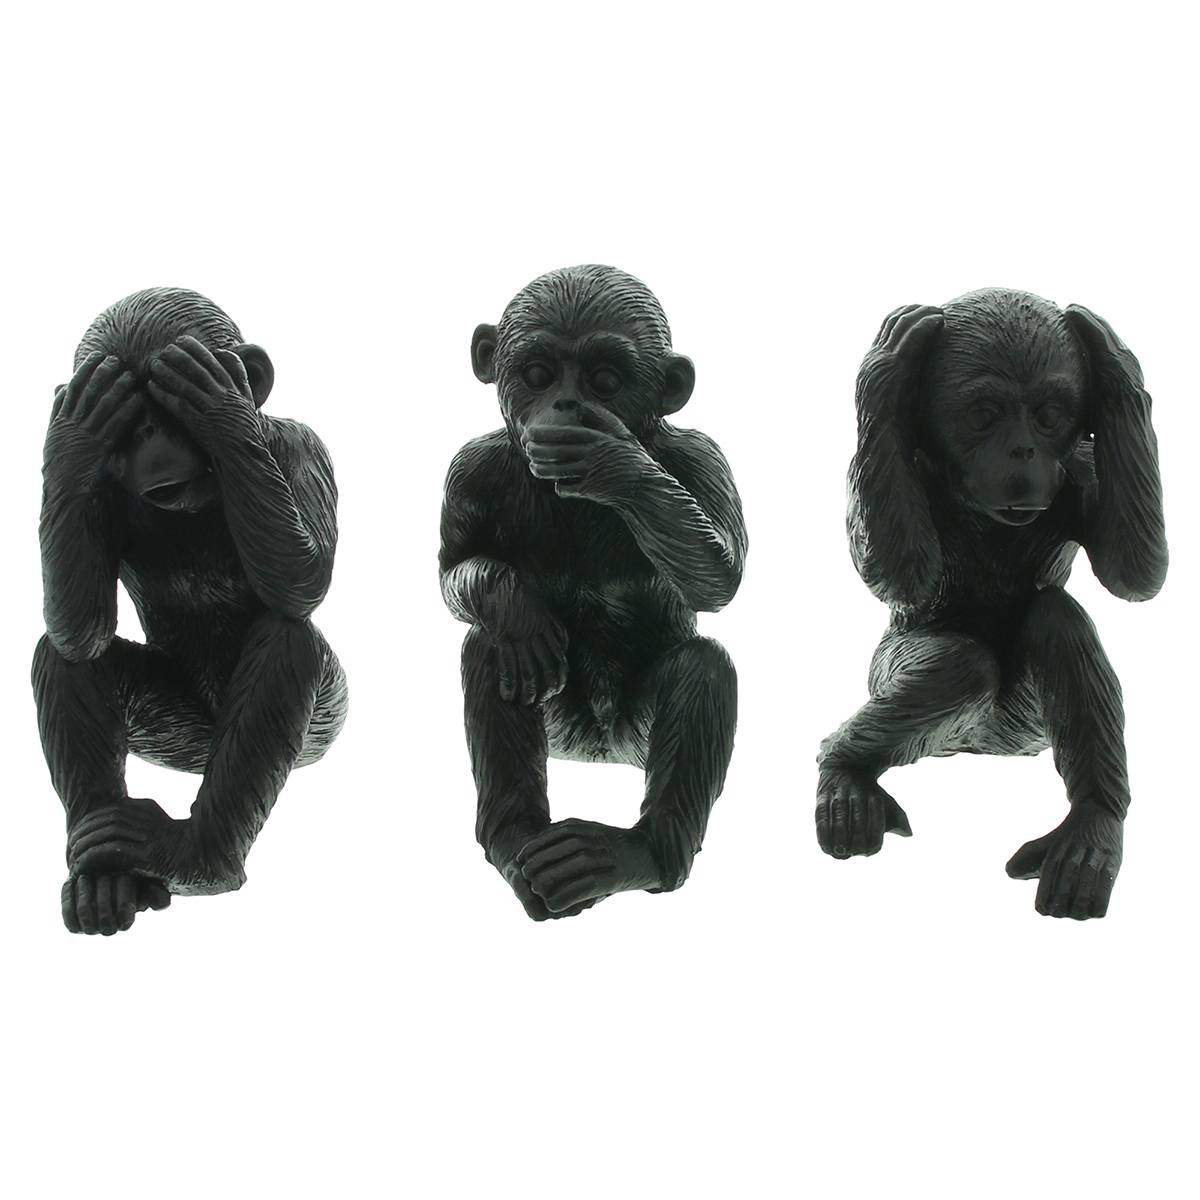 Декоративные фигуры "Трио обезьян", 3 штуки [09076], 